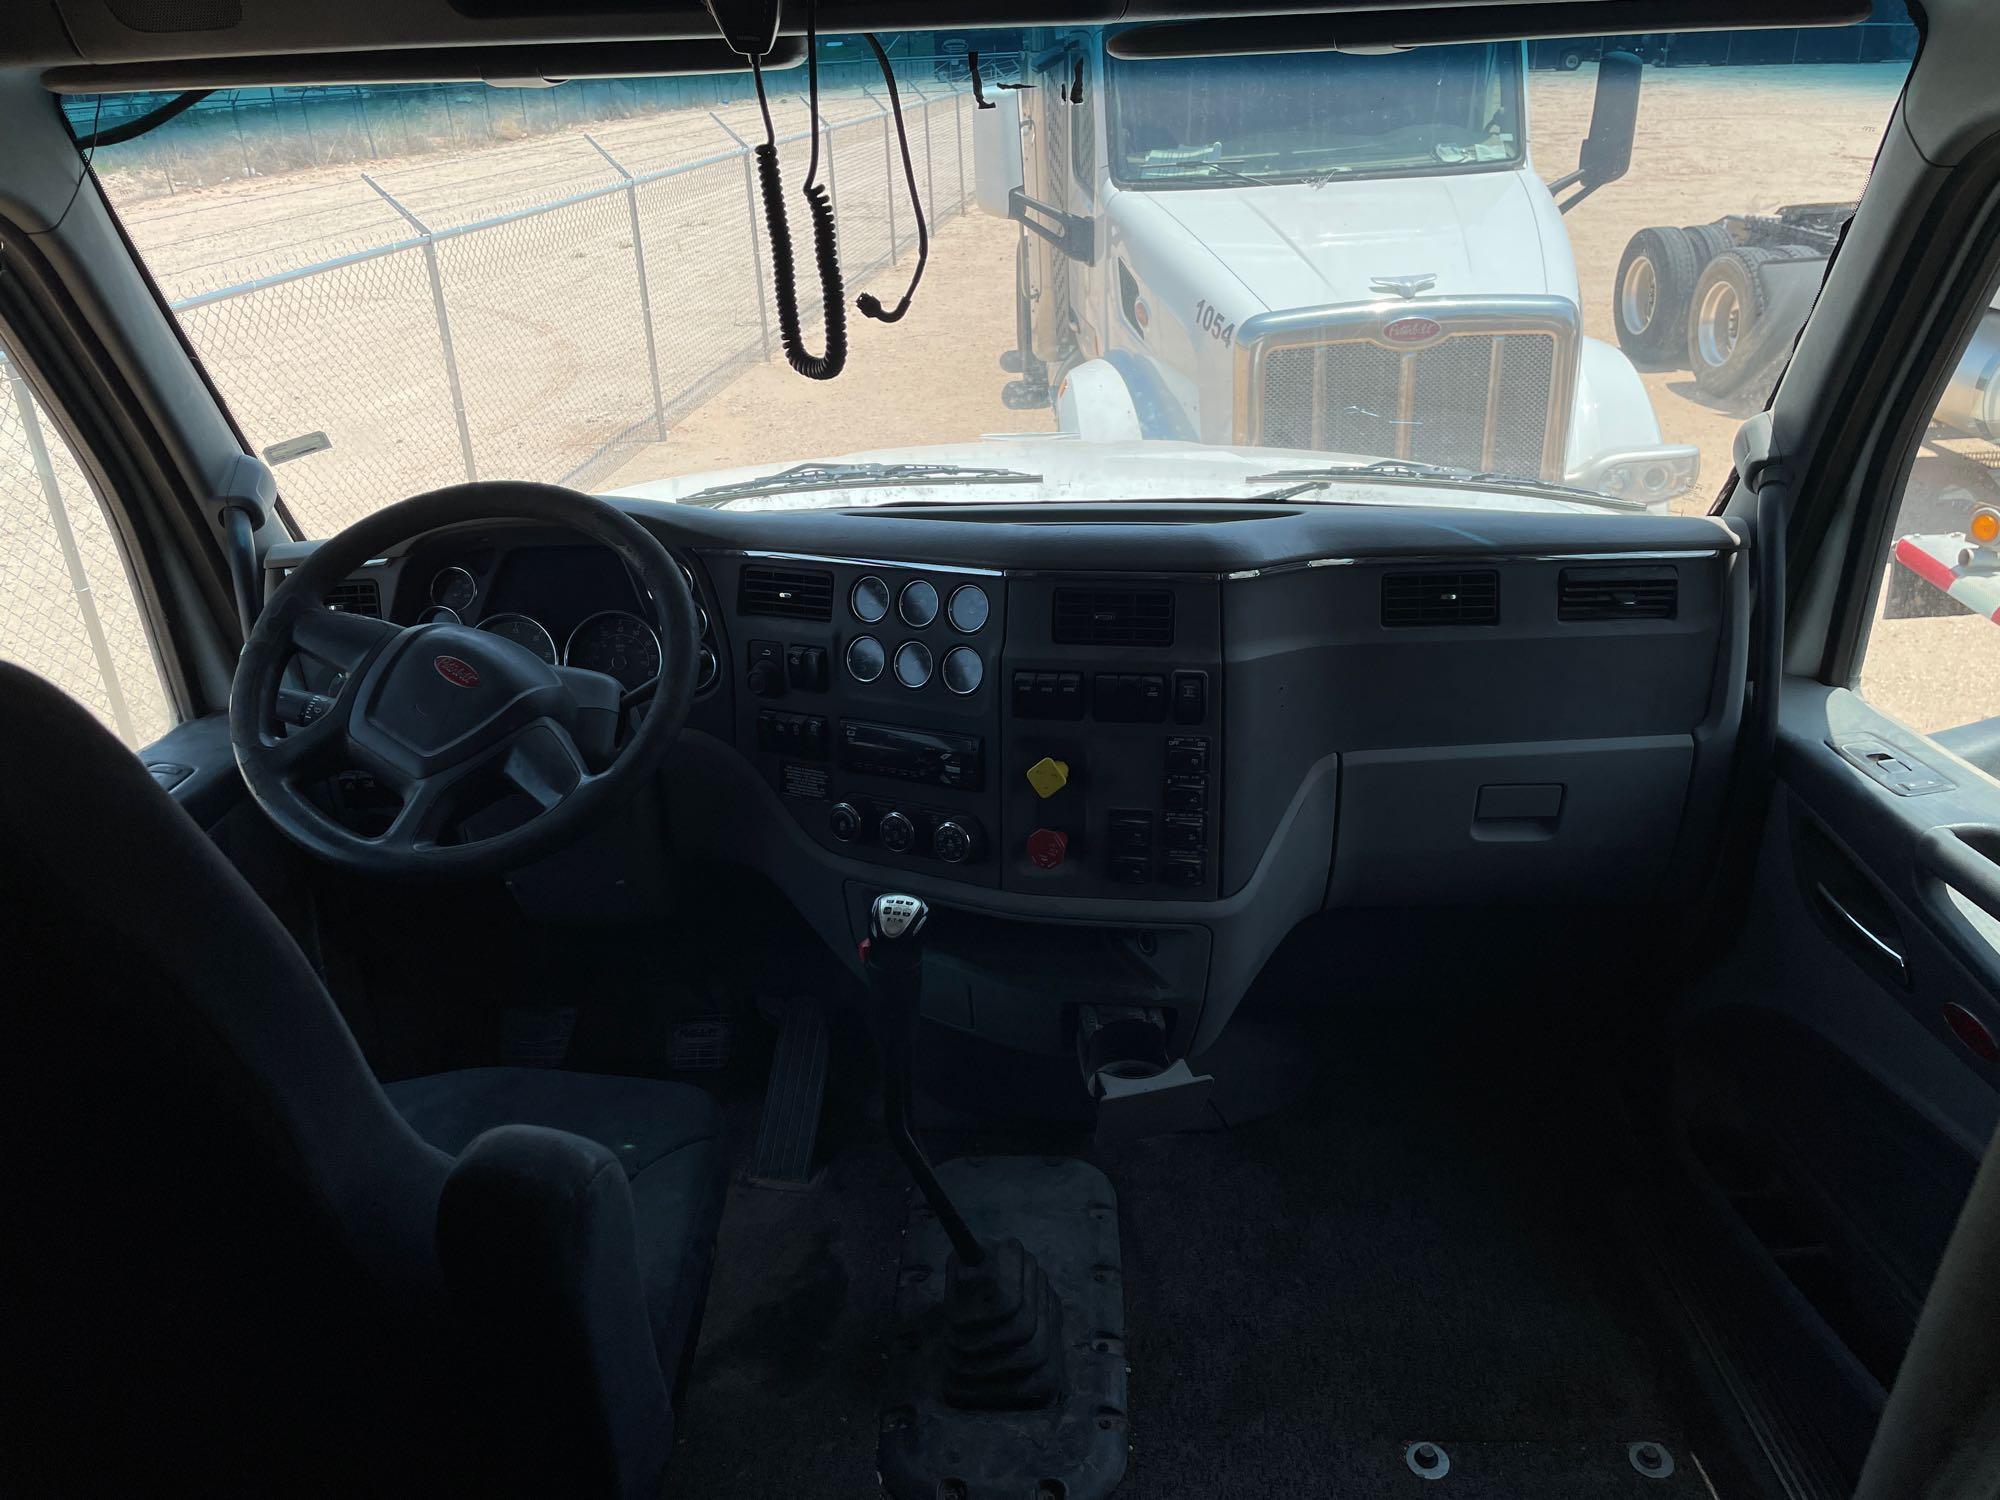 2016 Peterbilt 567 Truck, VIN # 1XPCD49X2GD344875